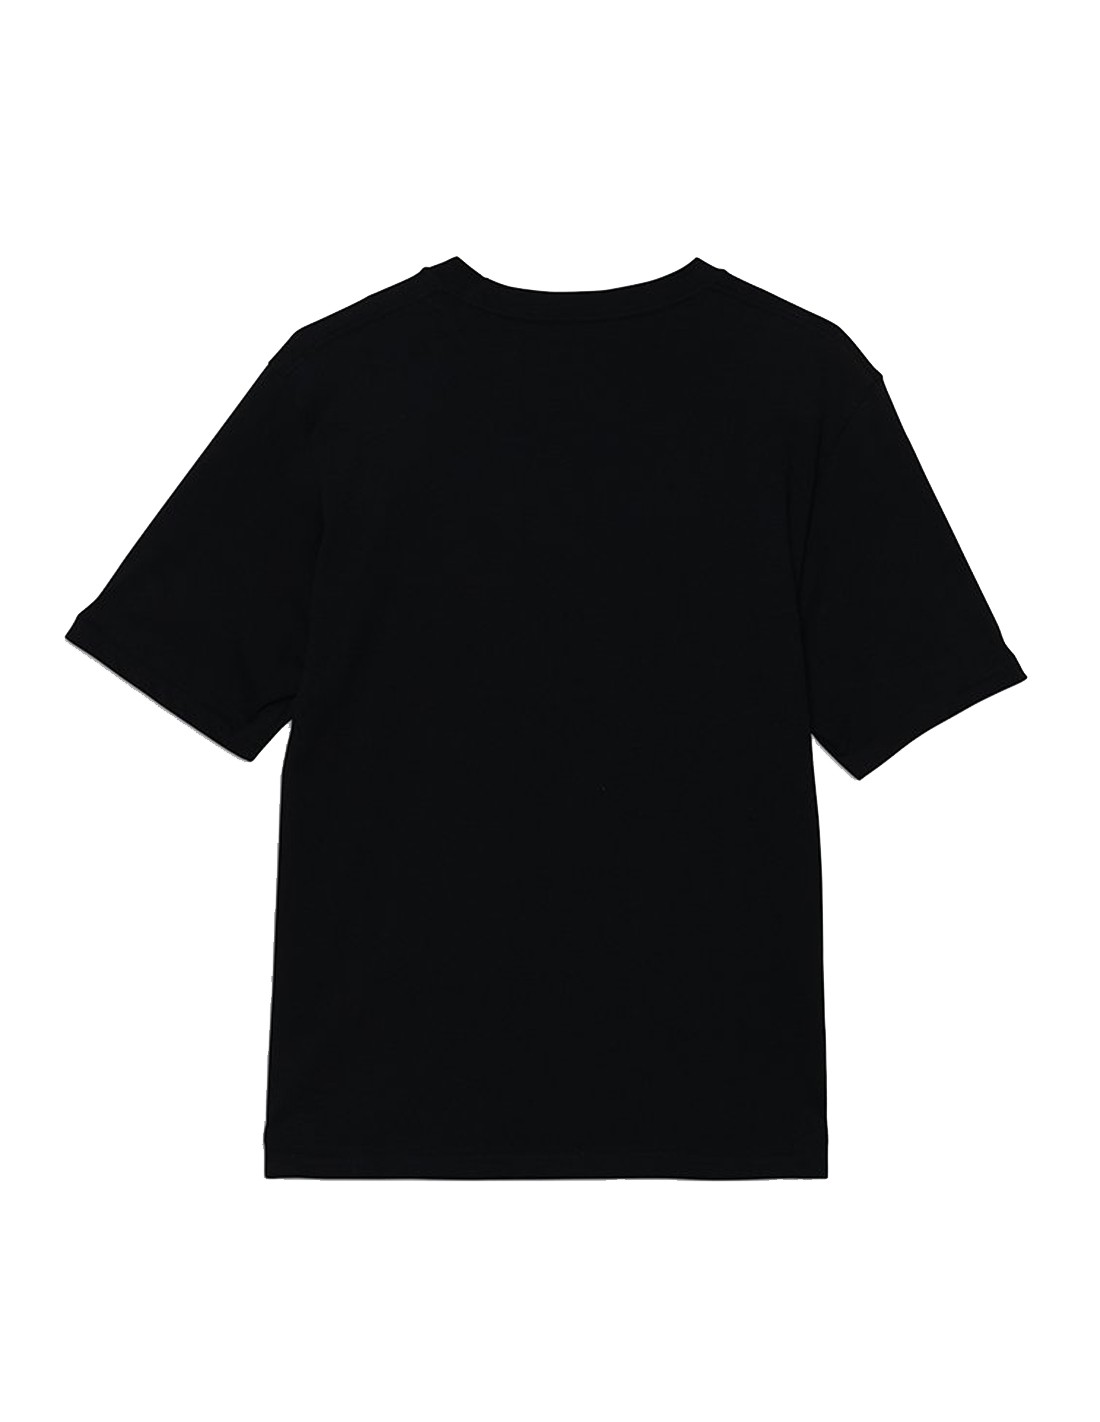 VANS OTW Boys T-shirt - Black 